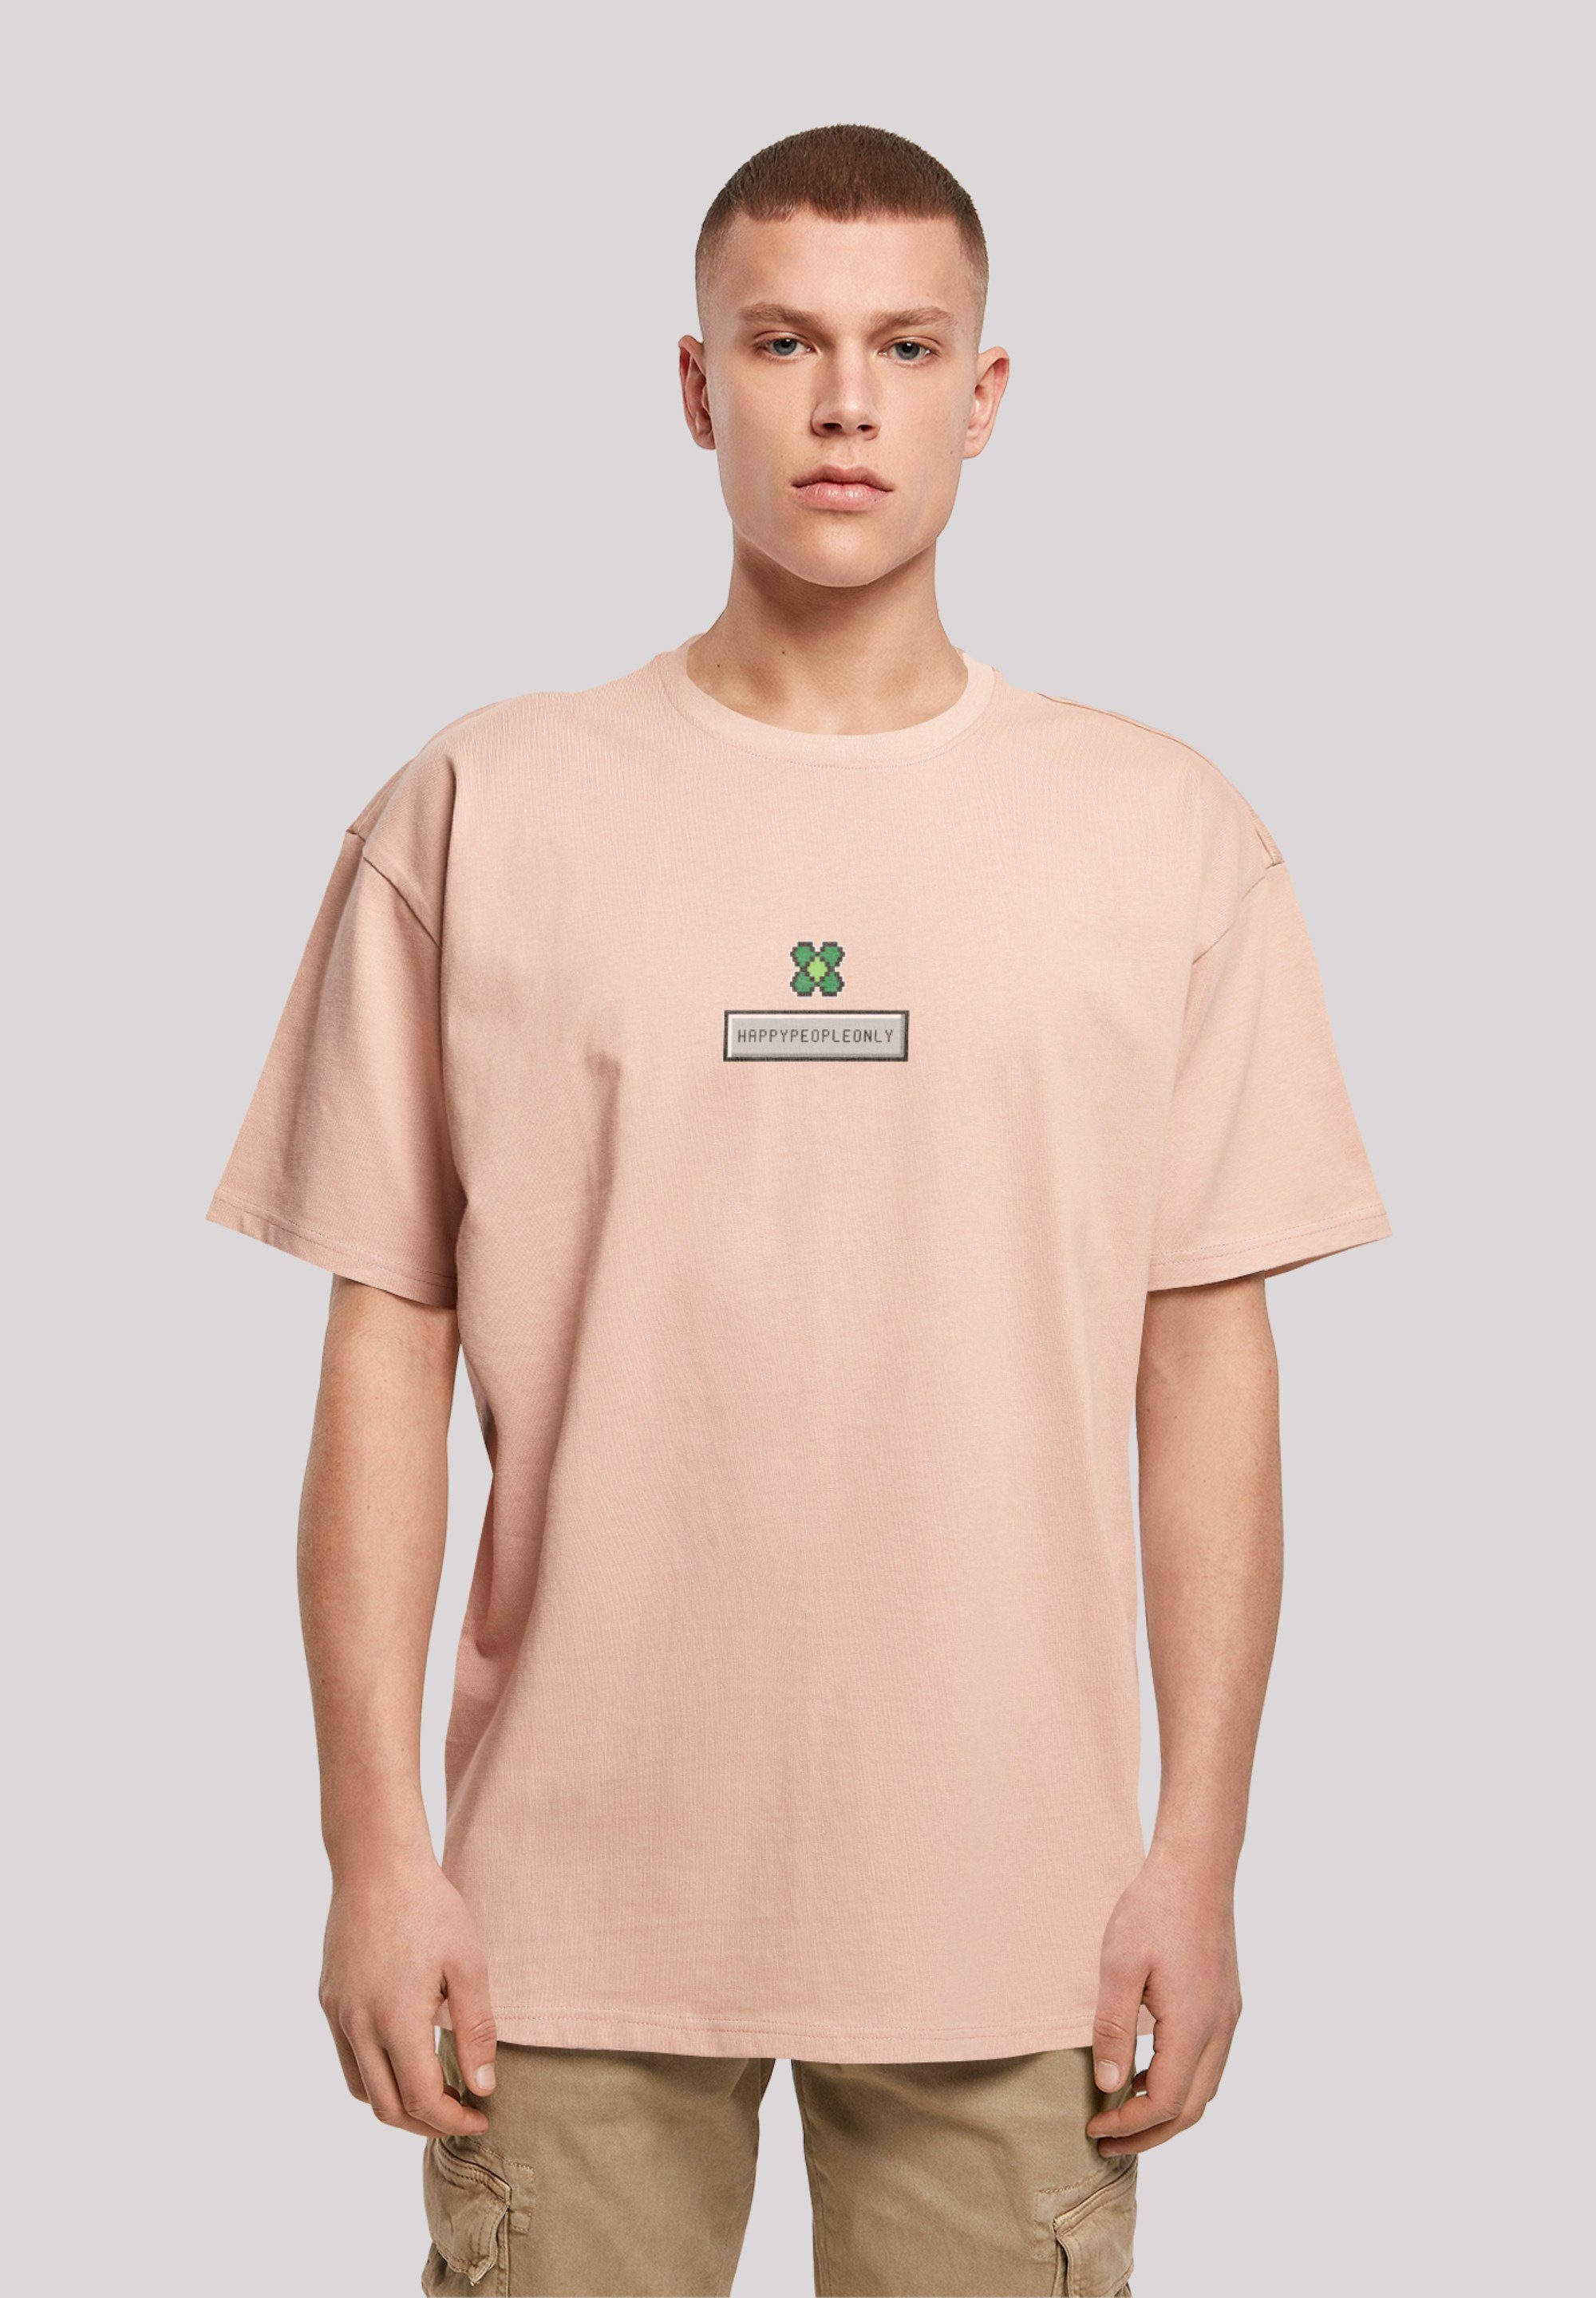 New Pixel Kleeblatt Silvester Print amber F4NT4STIC Happy Year T-Shirt